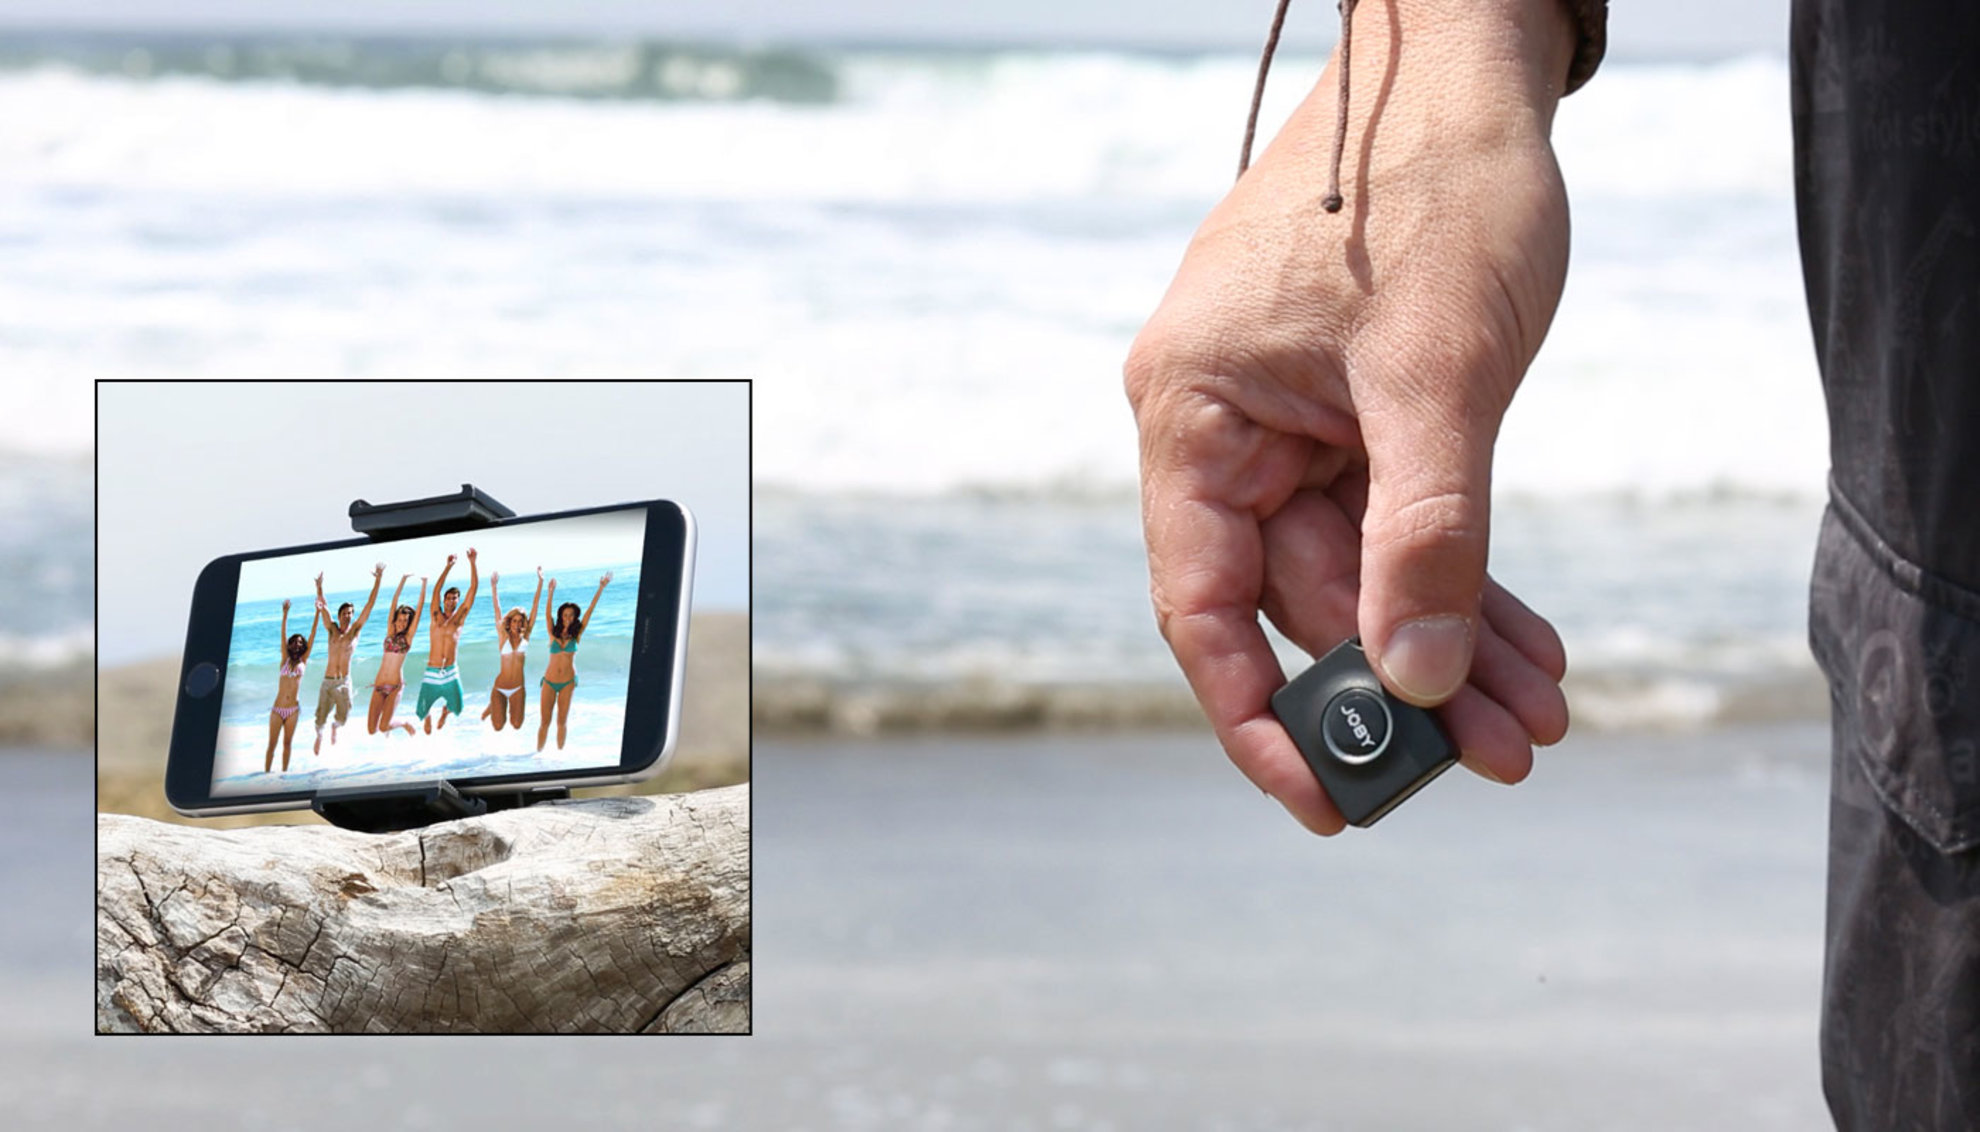 Dálková Bluetooth spoušť Impulse s dosahem až na 27m vzdálenost nabízí širokou škálu využití při fotografování i během snímání videa telefonem nebo fotoaparátem.